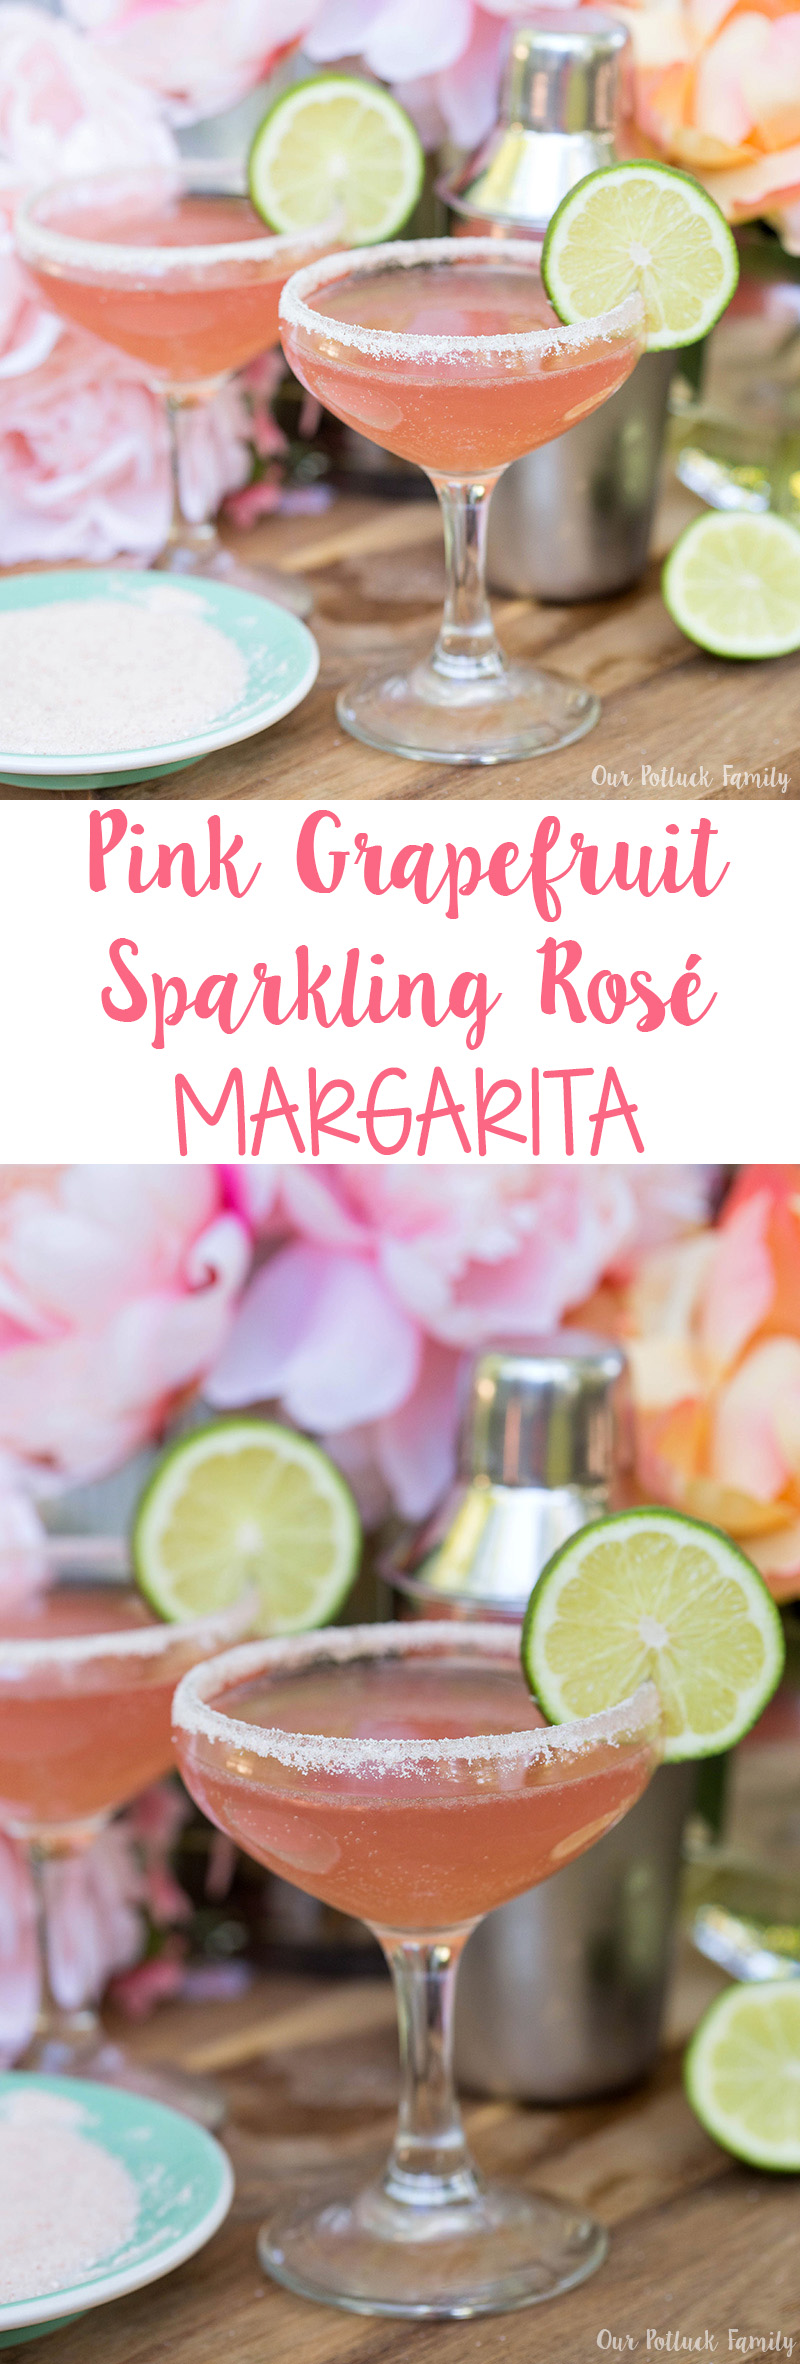 Pink Grapefruit Sparkling Rosé Margarita